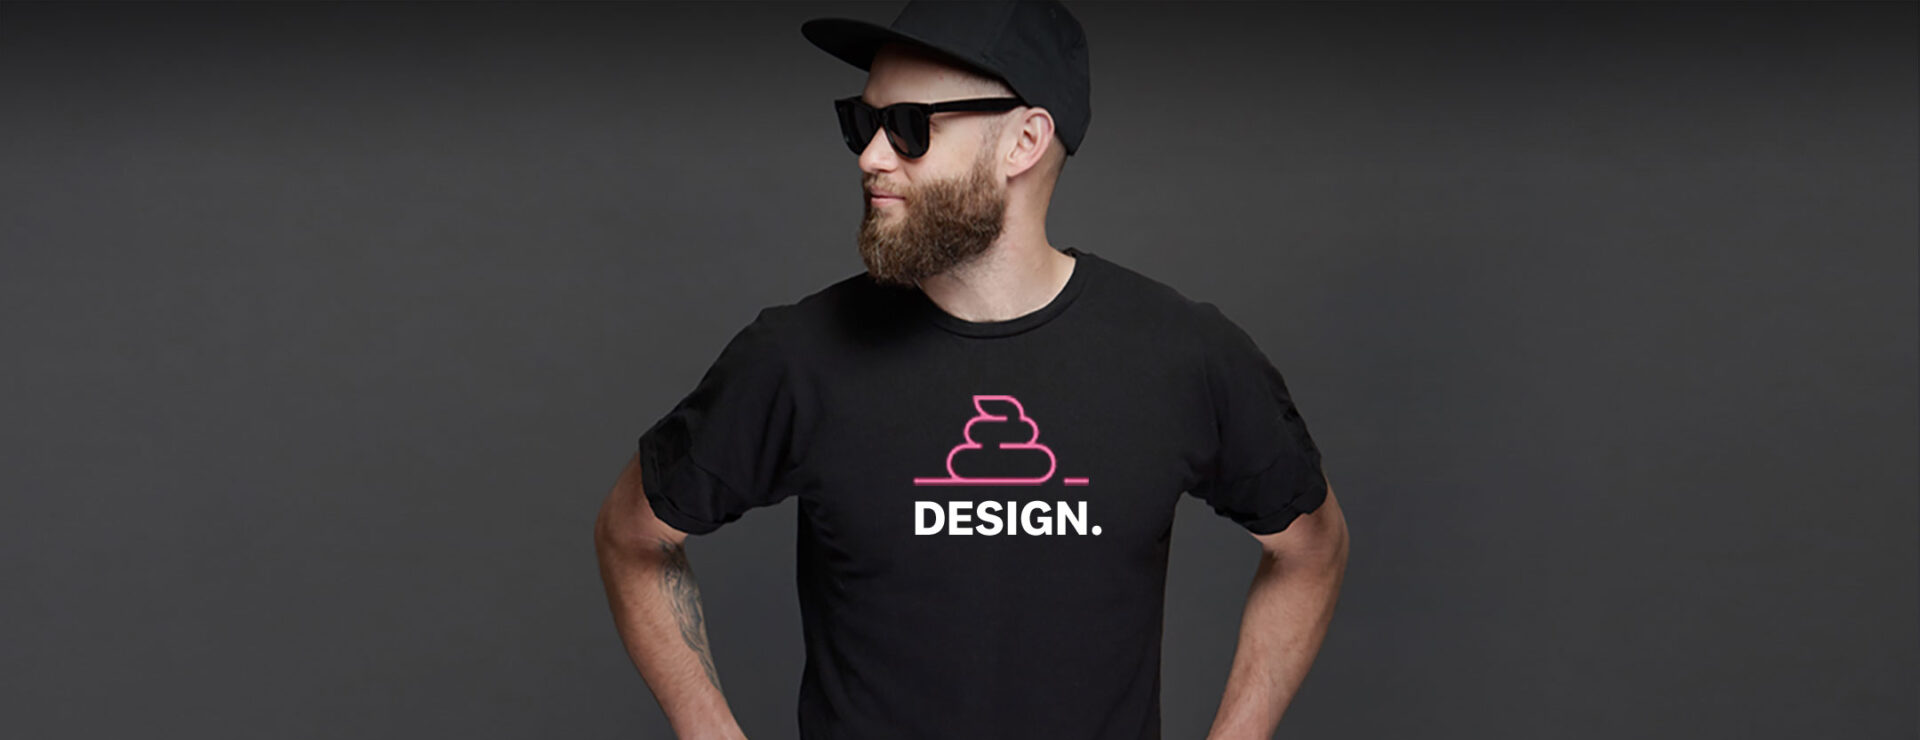 sh*tty hipster designer